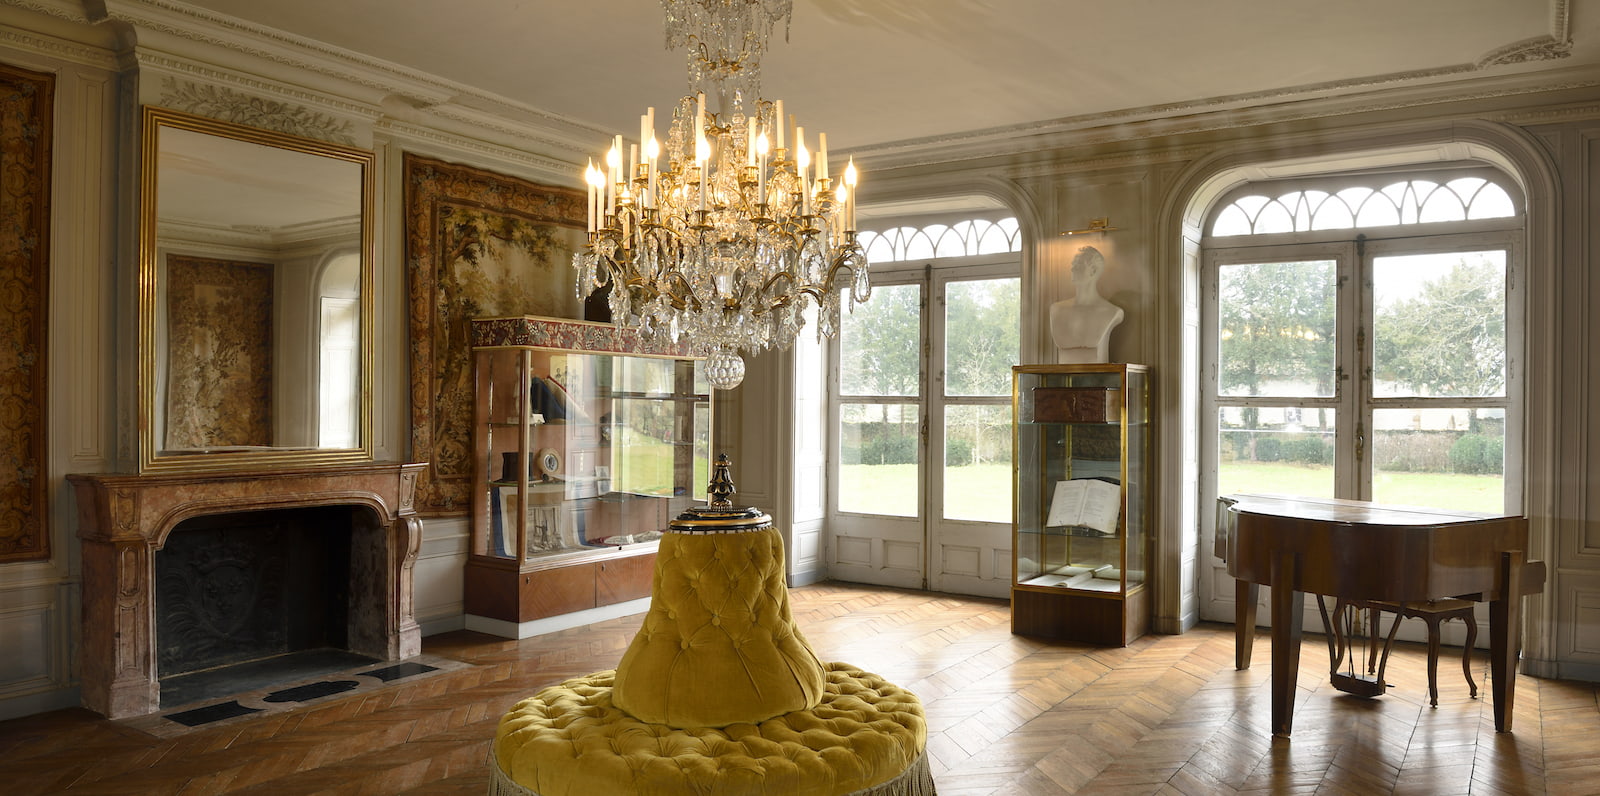 The museum of the castle of Alphonse de Lamartine